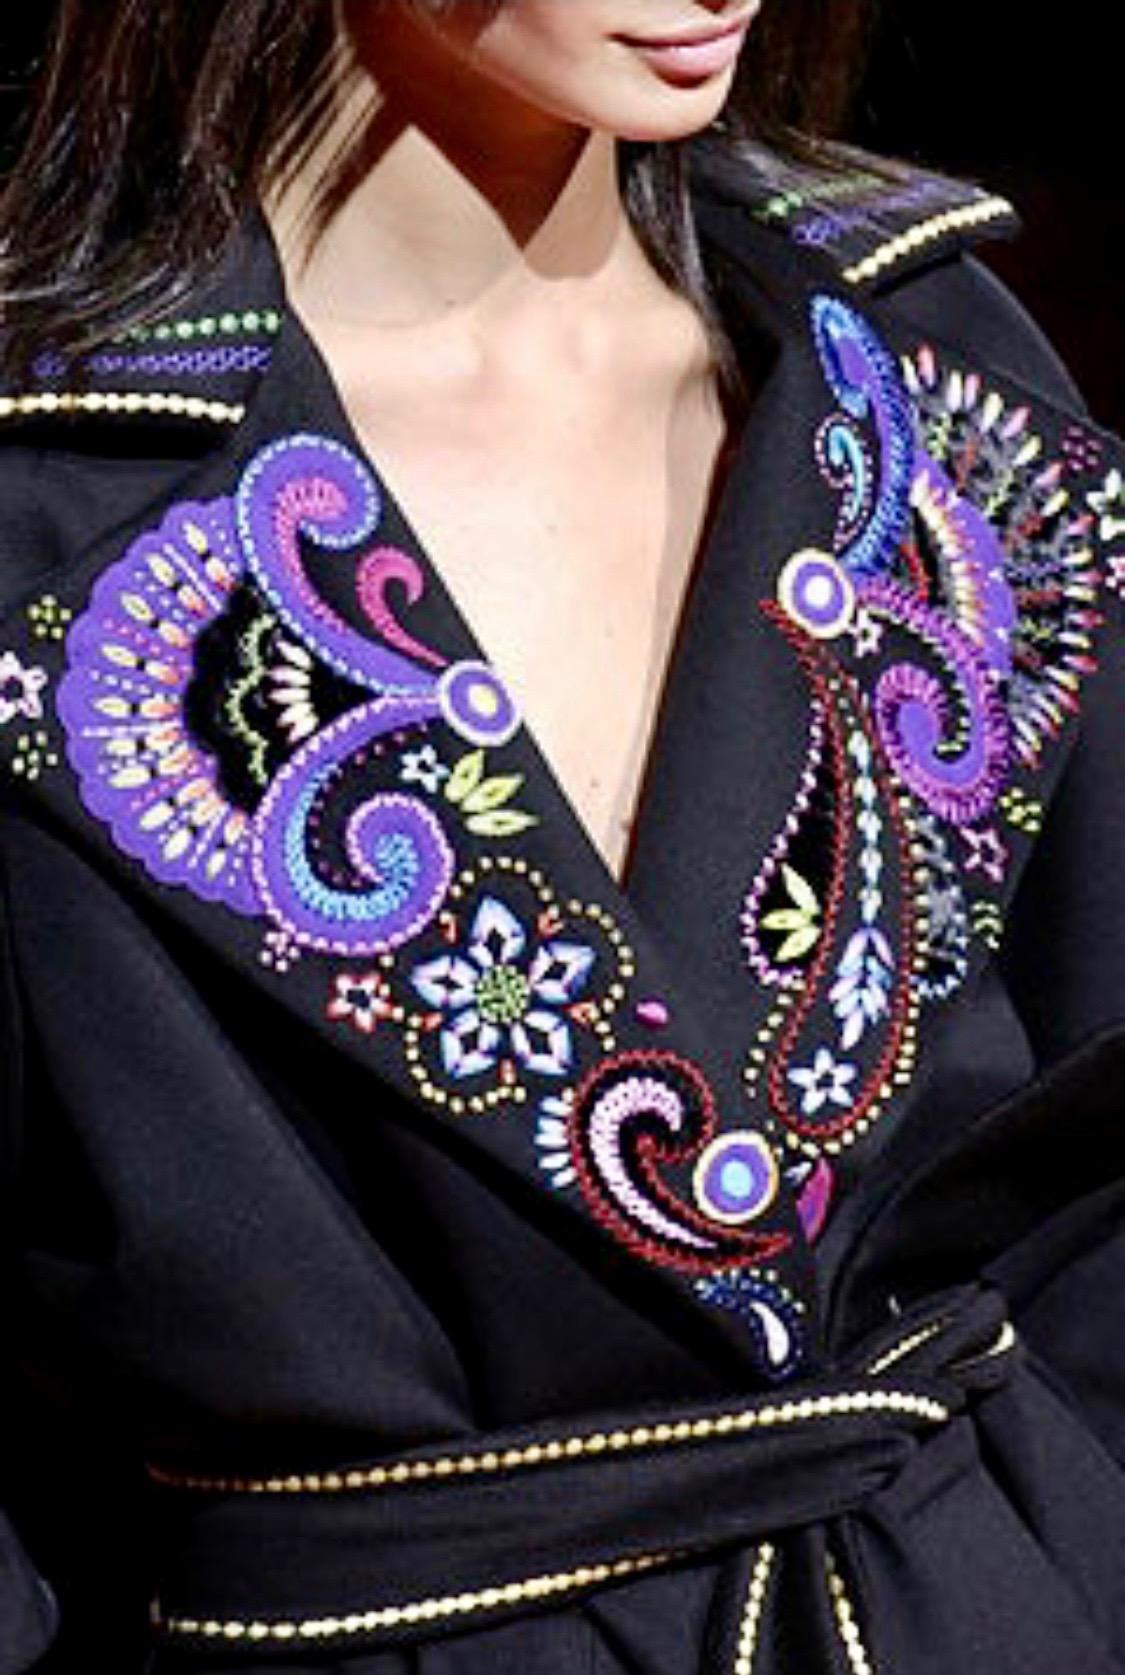 Présentation d'un mini sac en velours matelassé strassé et brodé conçu par Donatella pour Gianni Versace. Les poignées sont en satin de soie noir et s'harmonisent parfaitement avec la quincaillerie dorée, également recouverte de strass. Cette pièce,